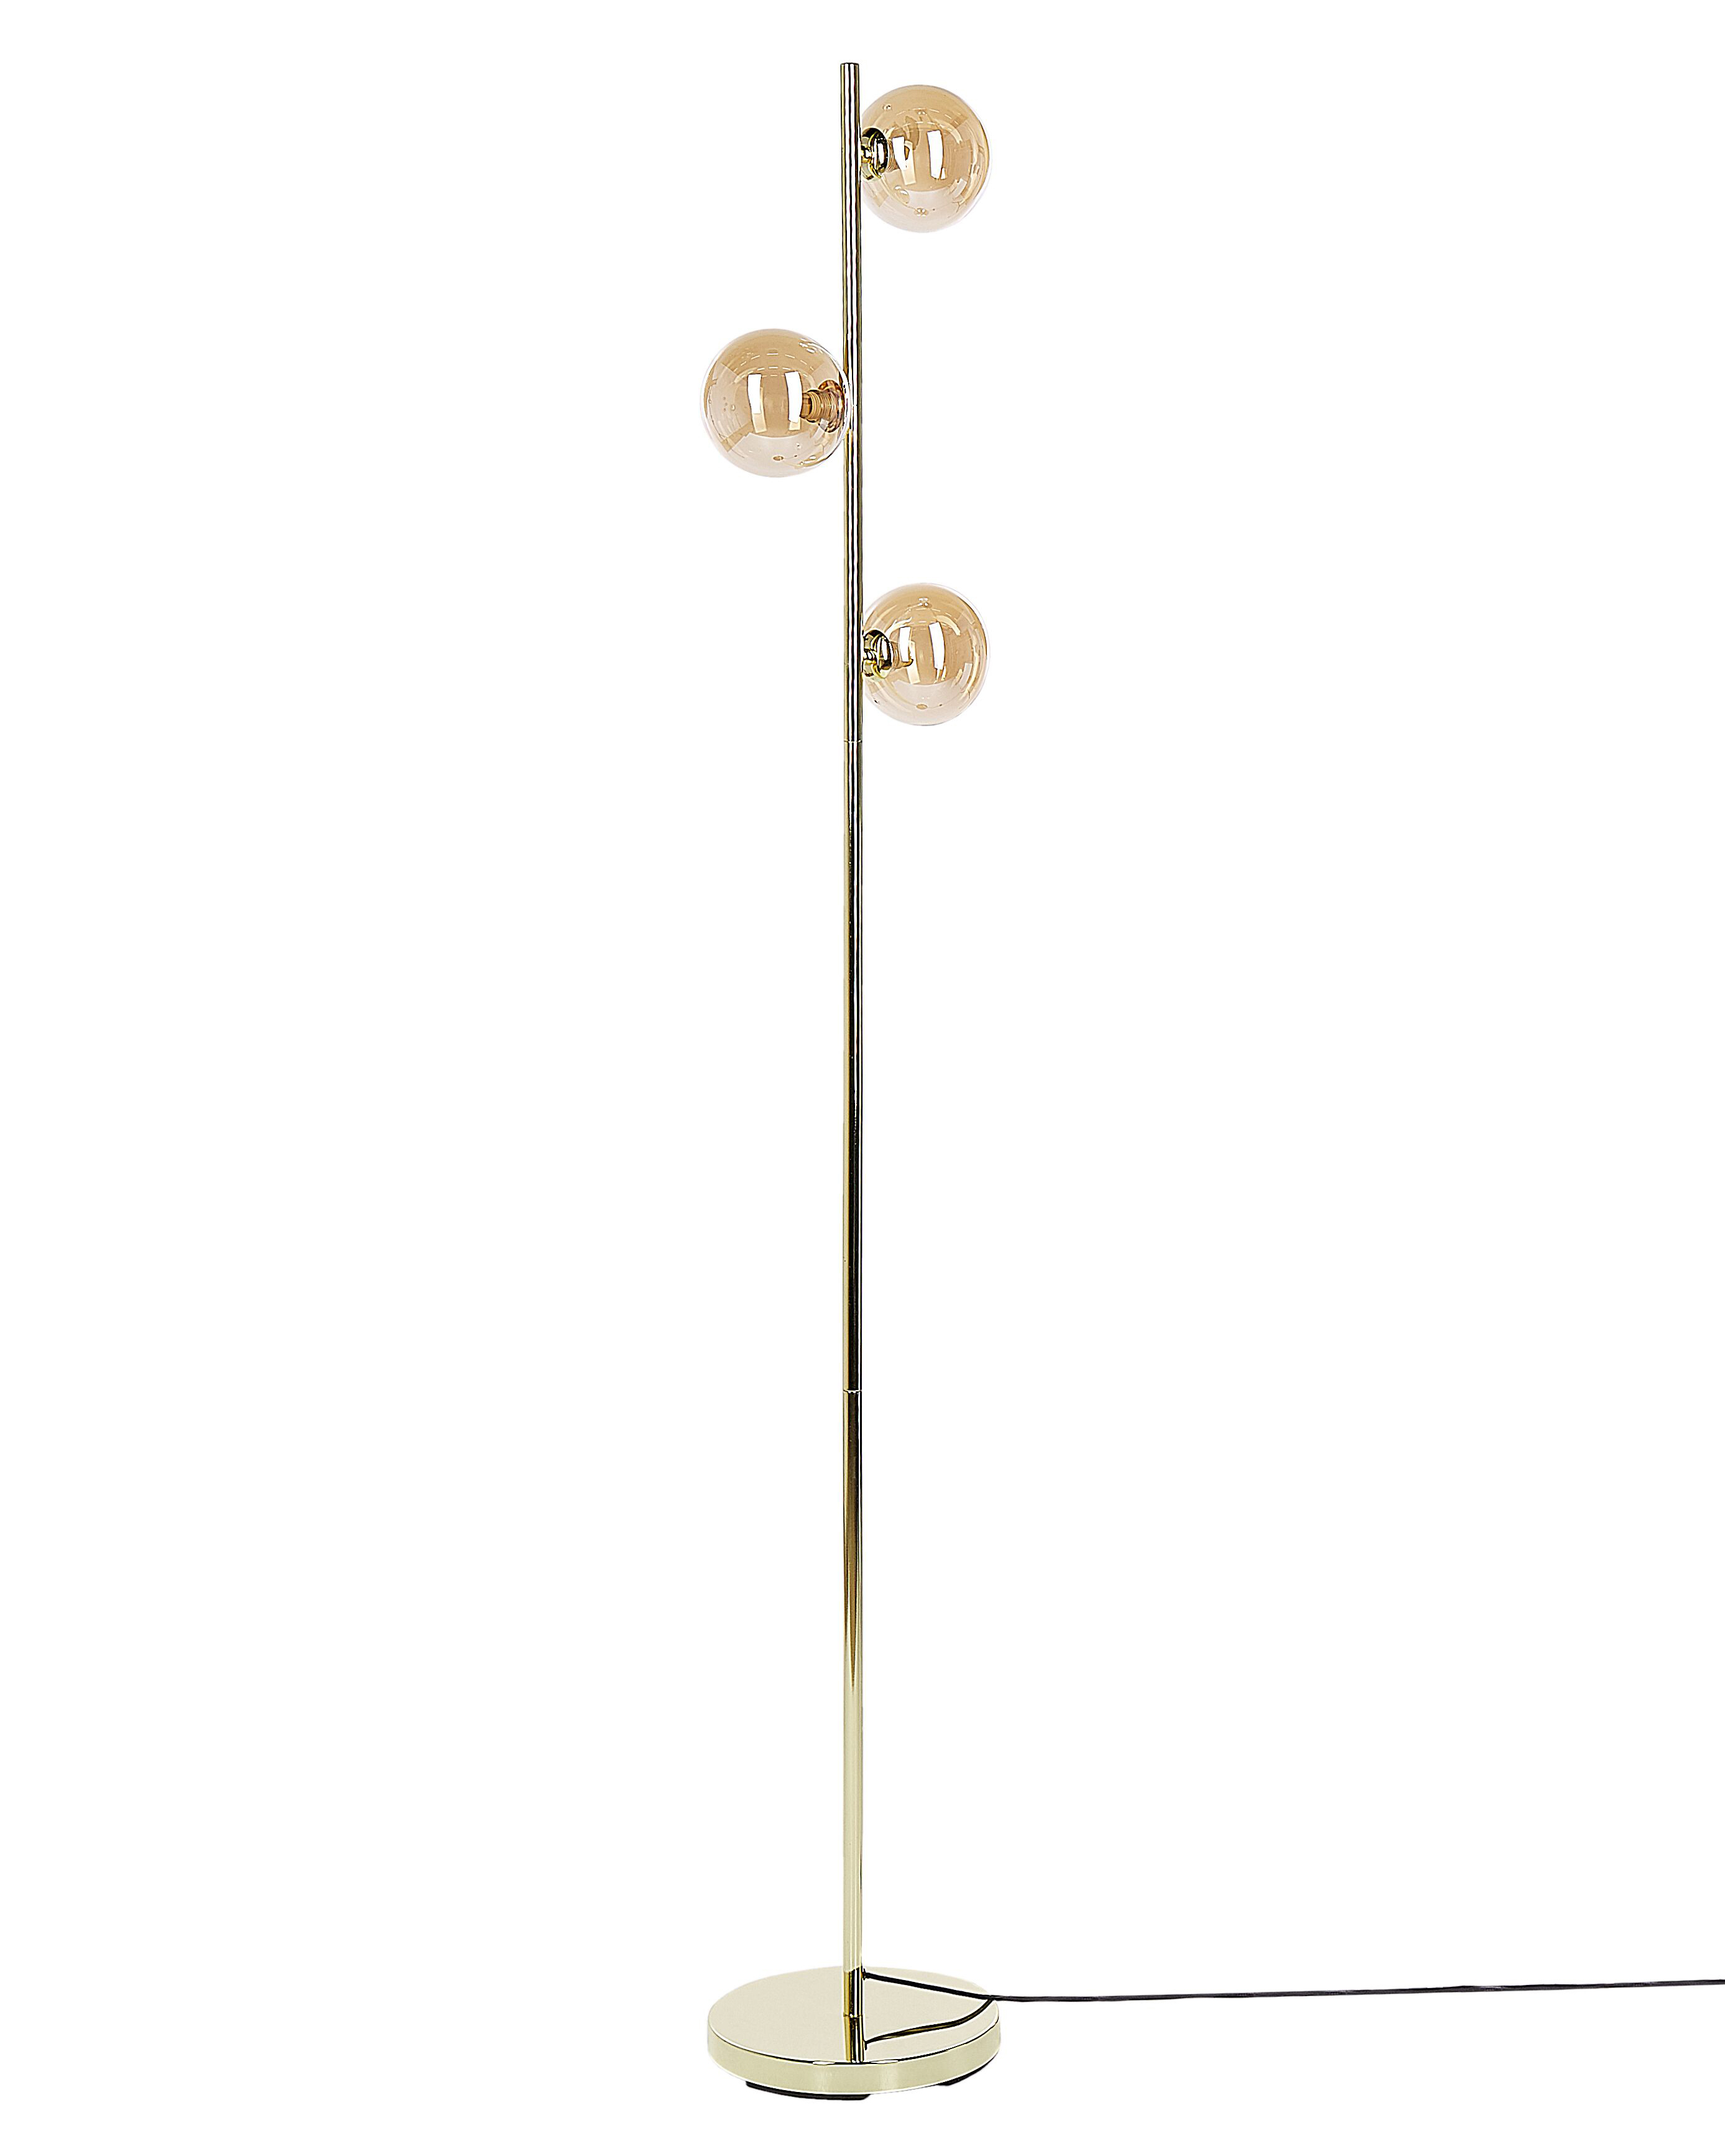 Stehlampe Metall / Rauchglas gold 154 cm 3-flammig Kugelform RAMIS_877792